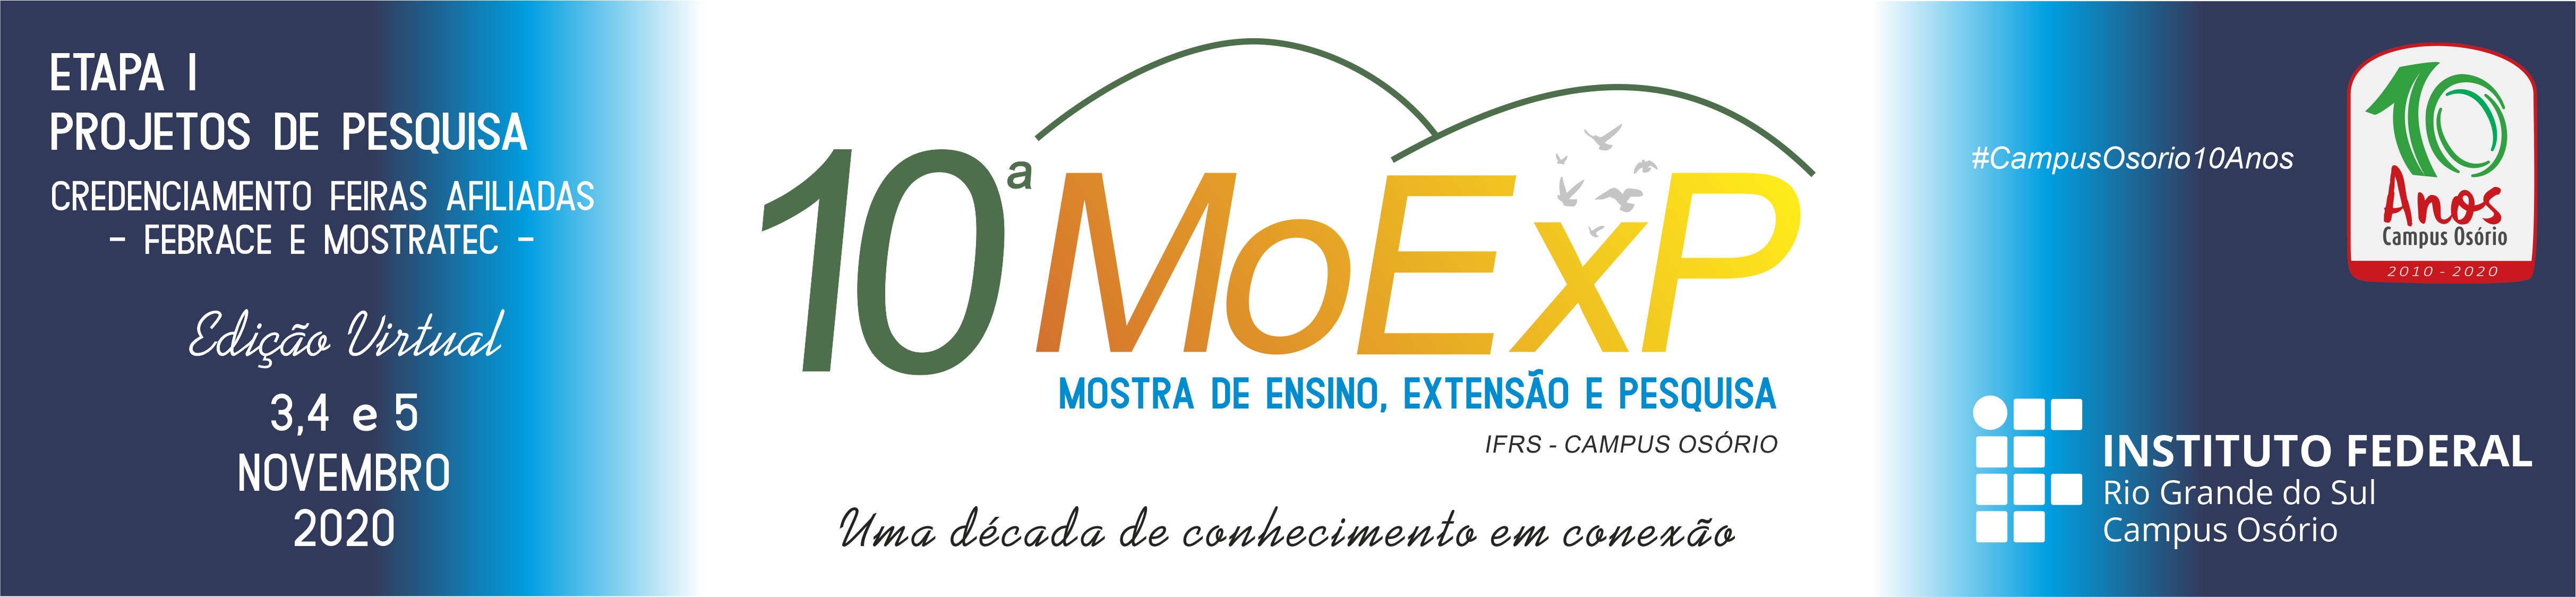 Logo10imoexp